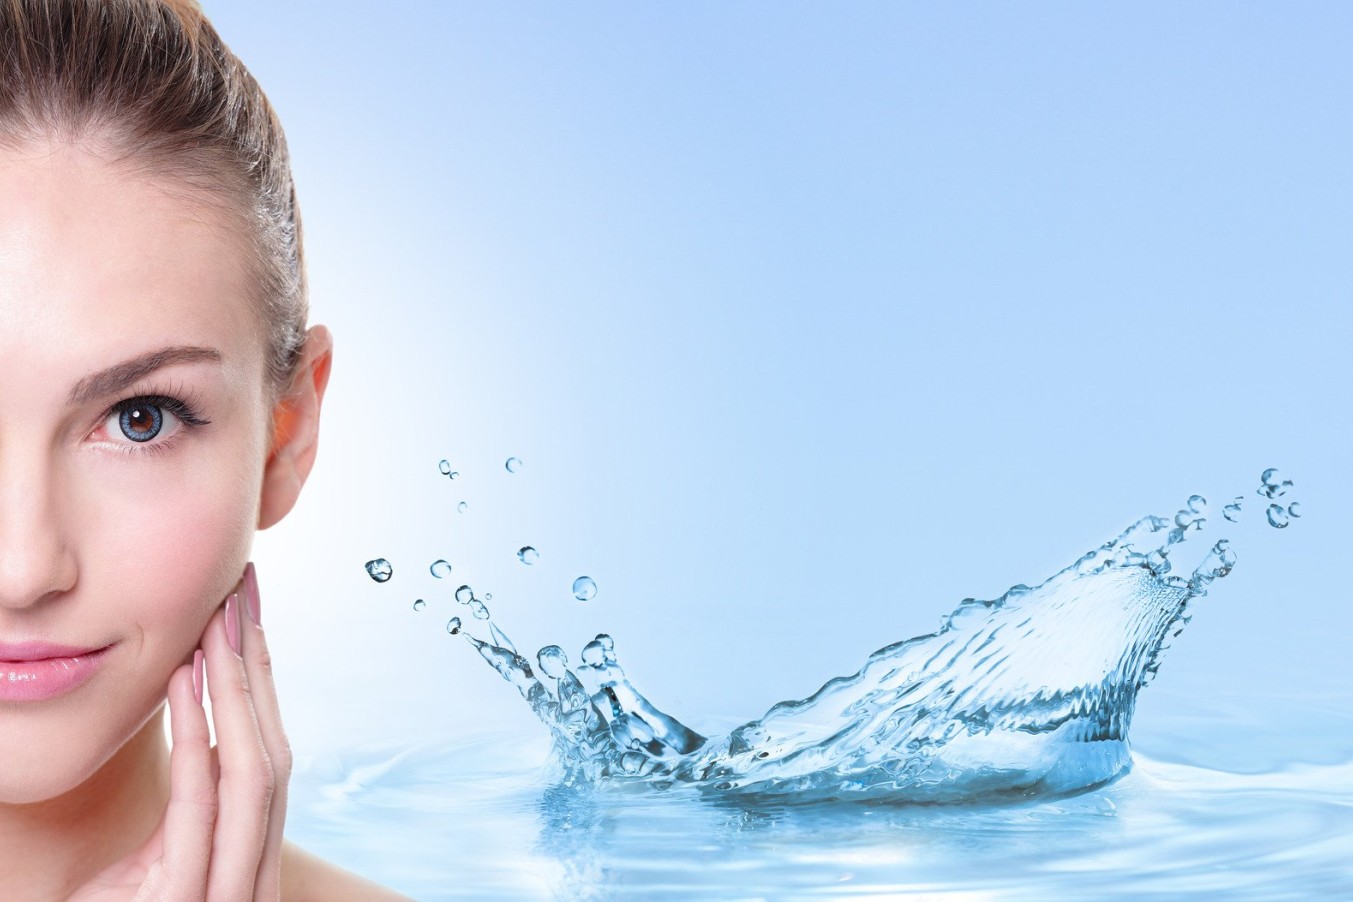 Prirodna voda Aquaviva koži vraća elastičnost i prozračnost.